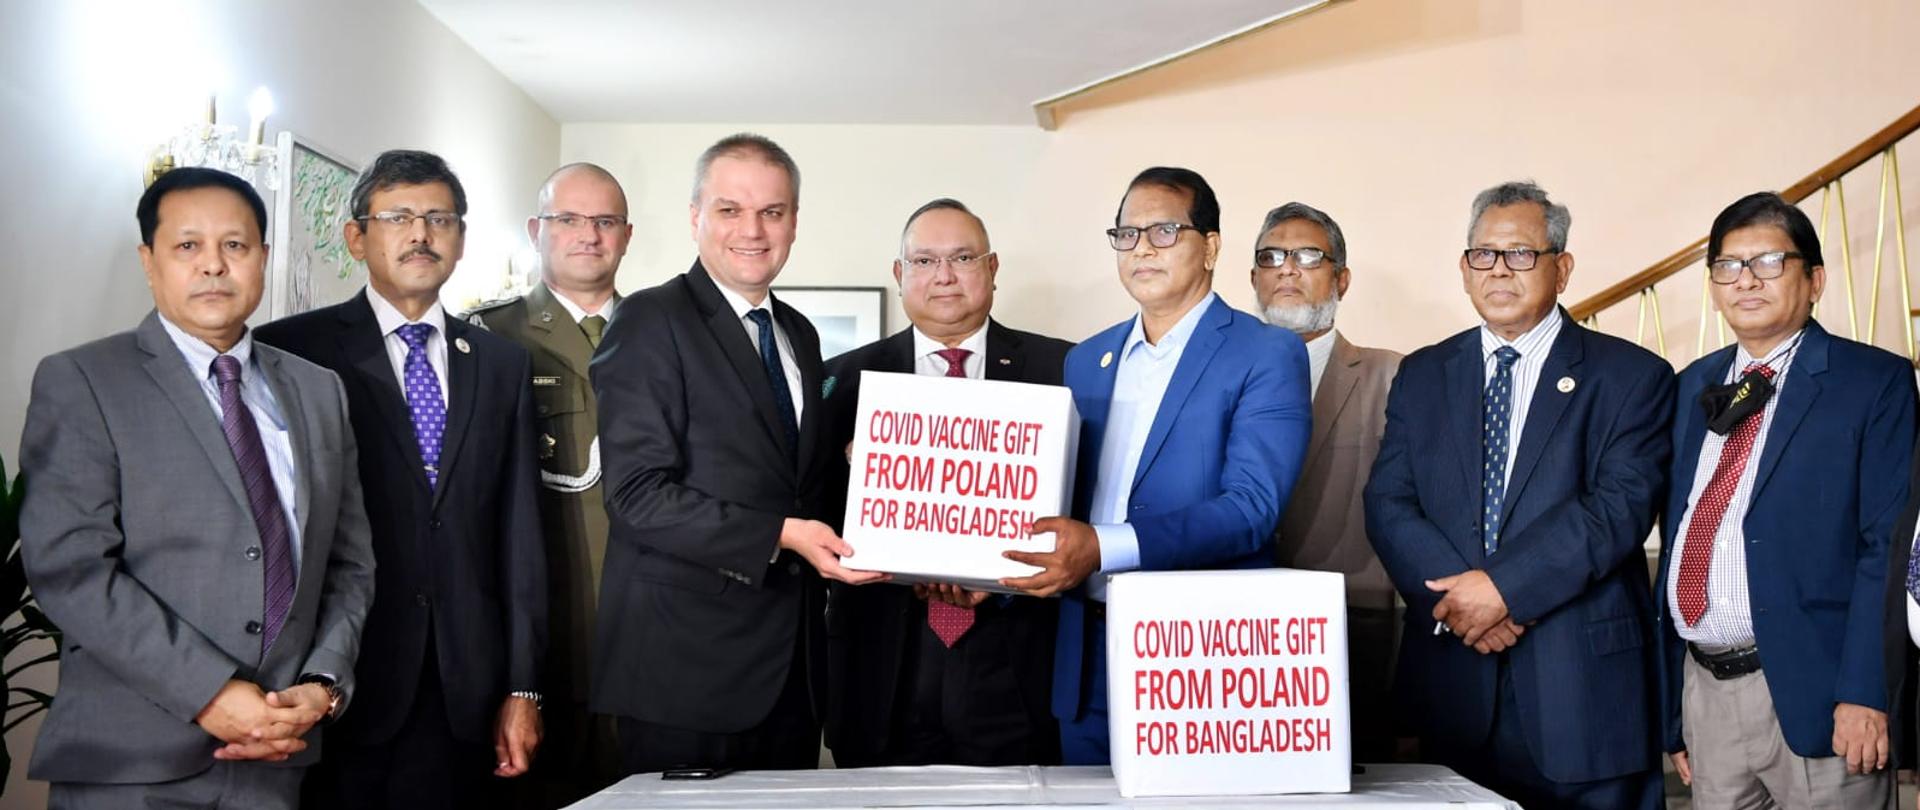 Grupa mężczyzn stoi za stołem. Jeden mężczyzna przekazuje drugiemu mężczyźnie pudełko z napisem "Covid vaccine gift from Poland for Bangladesh"